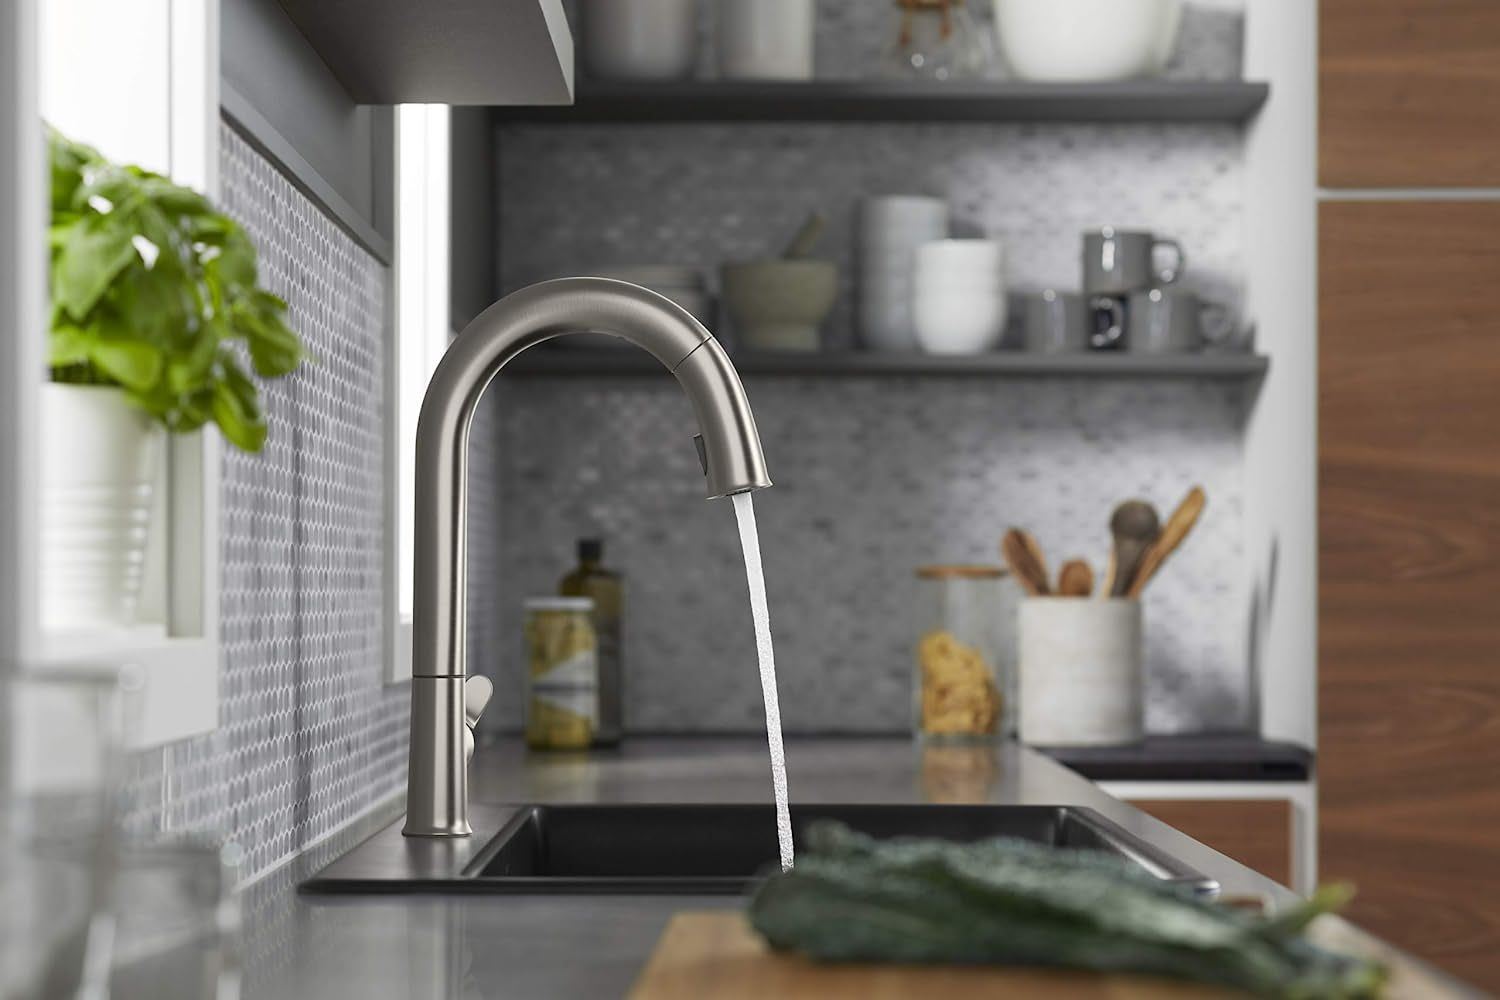 the kohler k-72218-wb-vs sensate kitchen faucet dispensing water